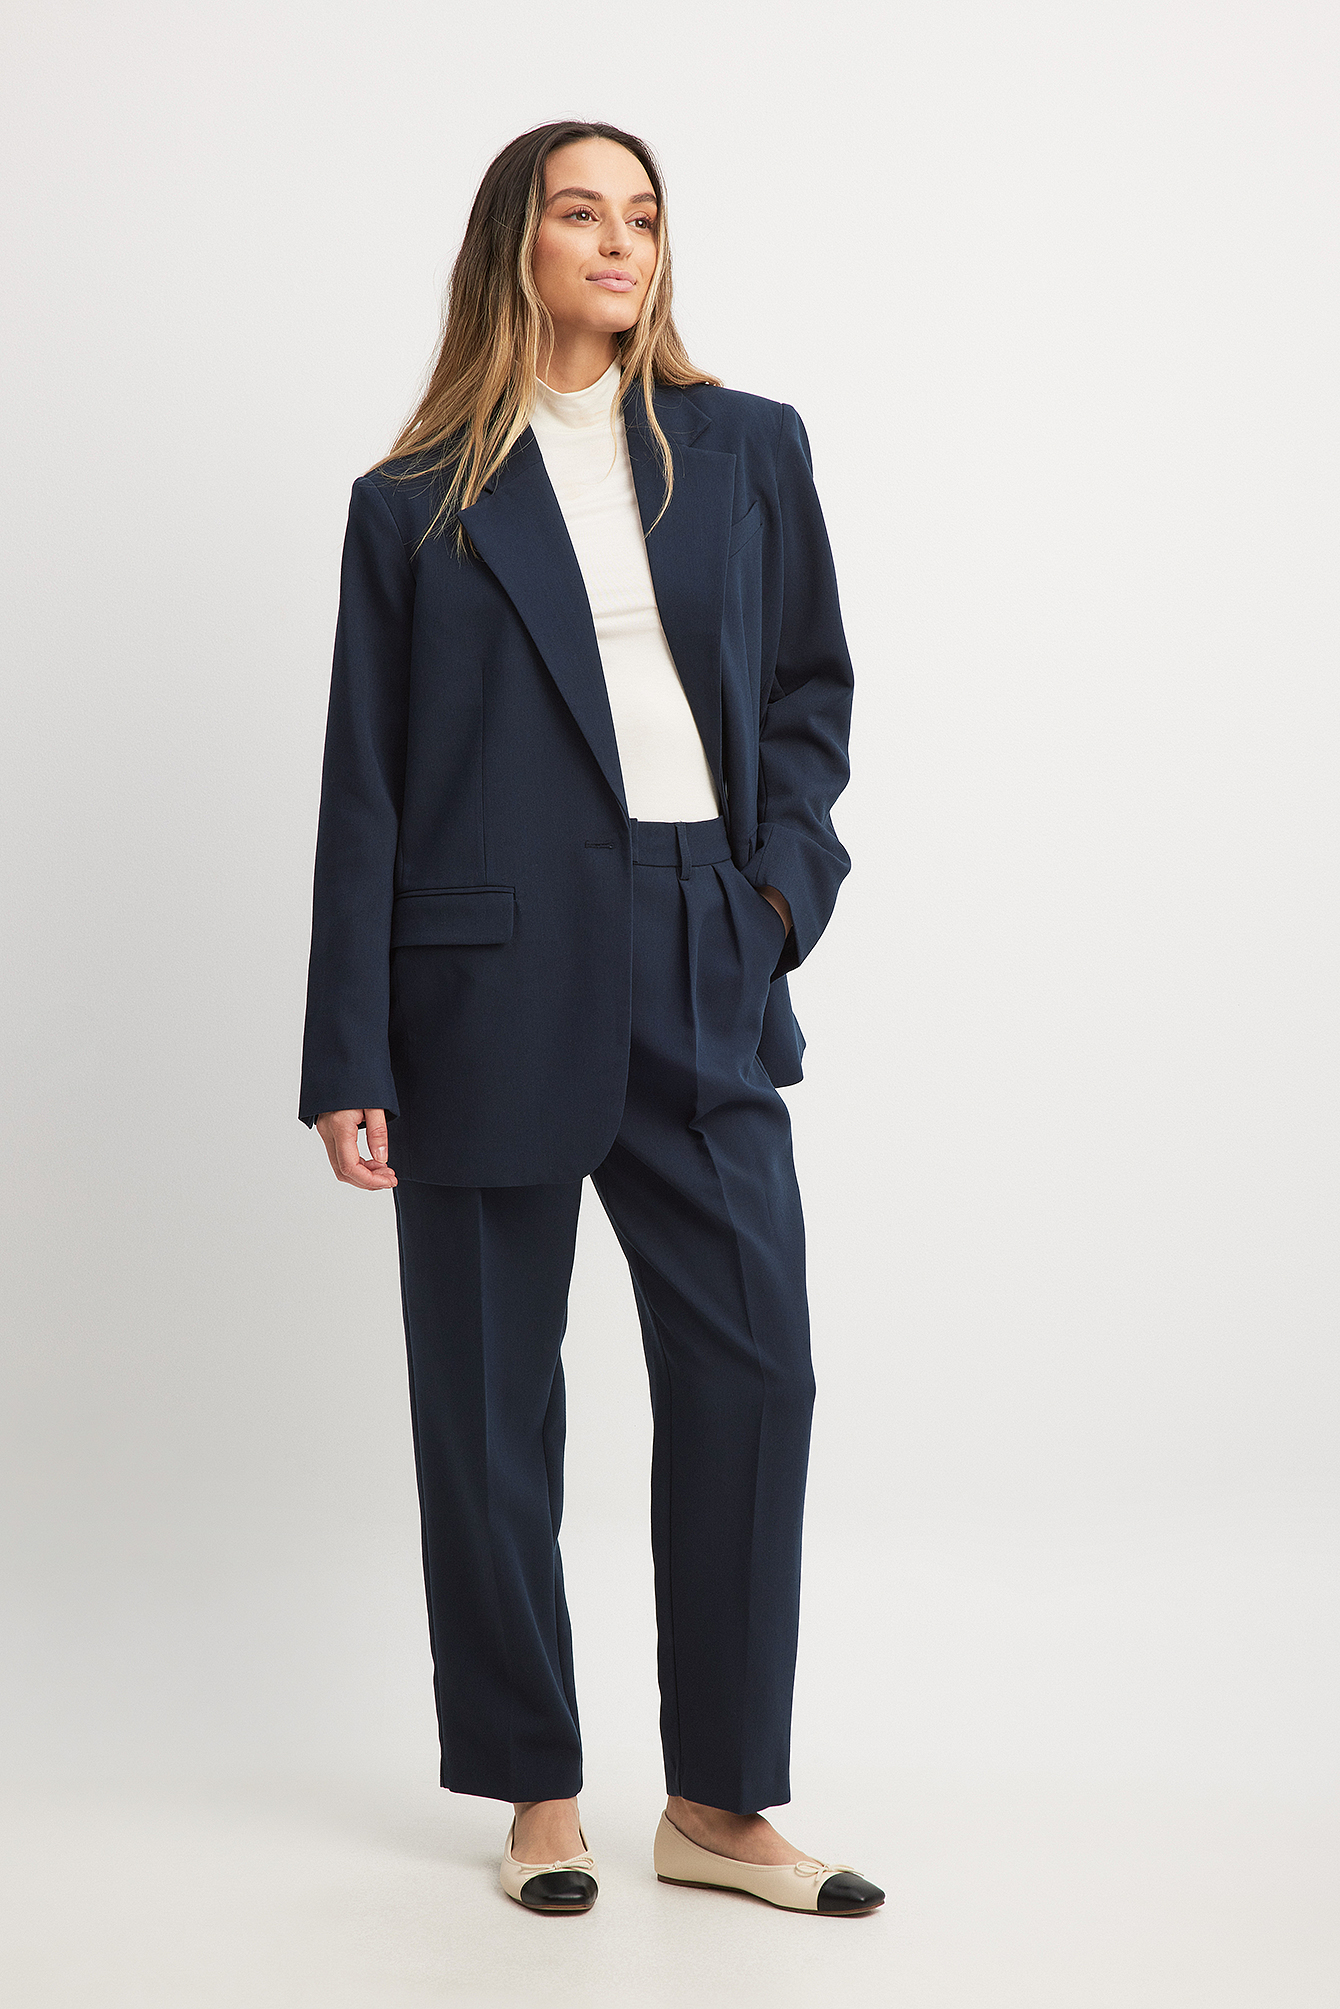 Women's Navy Blue Suit by SuitShop